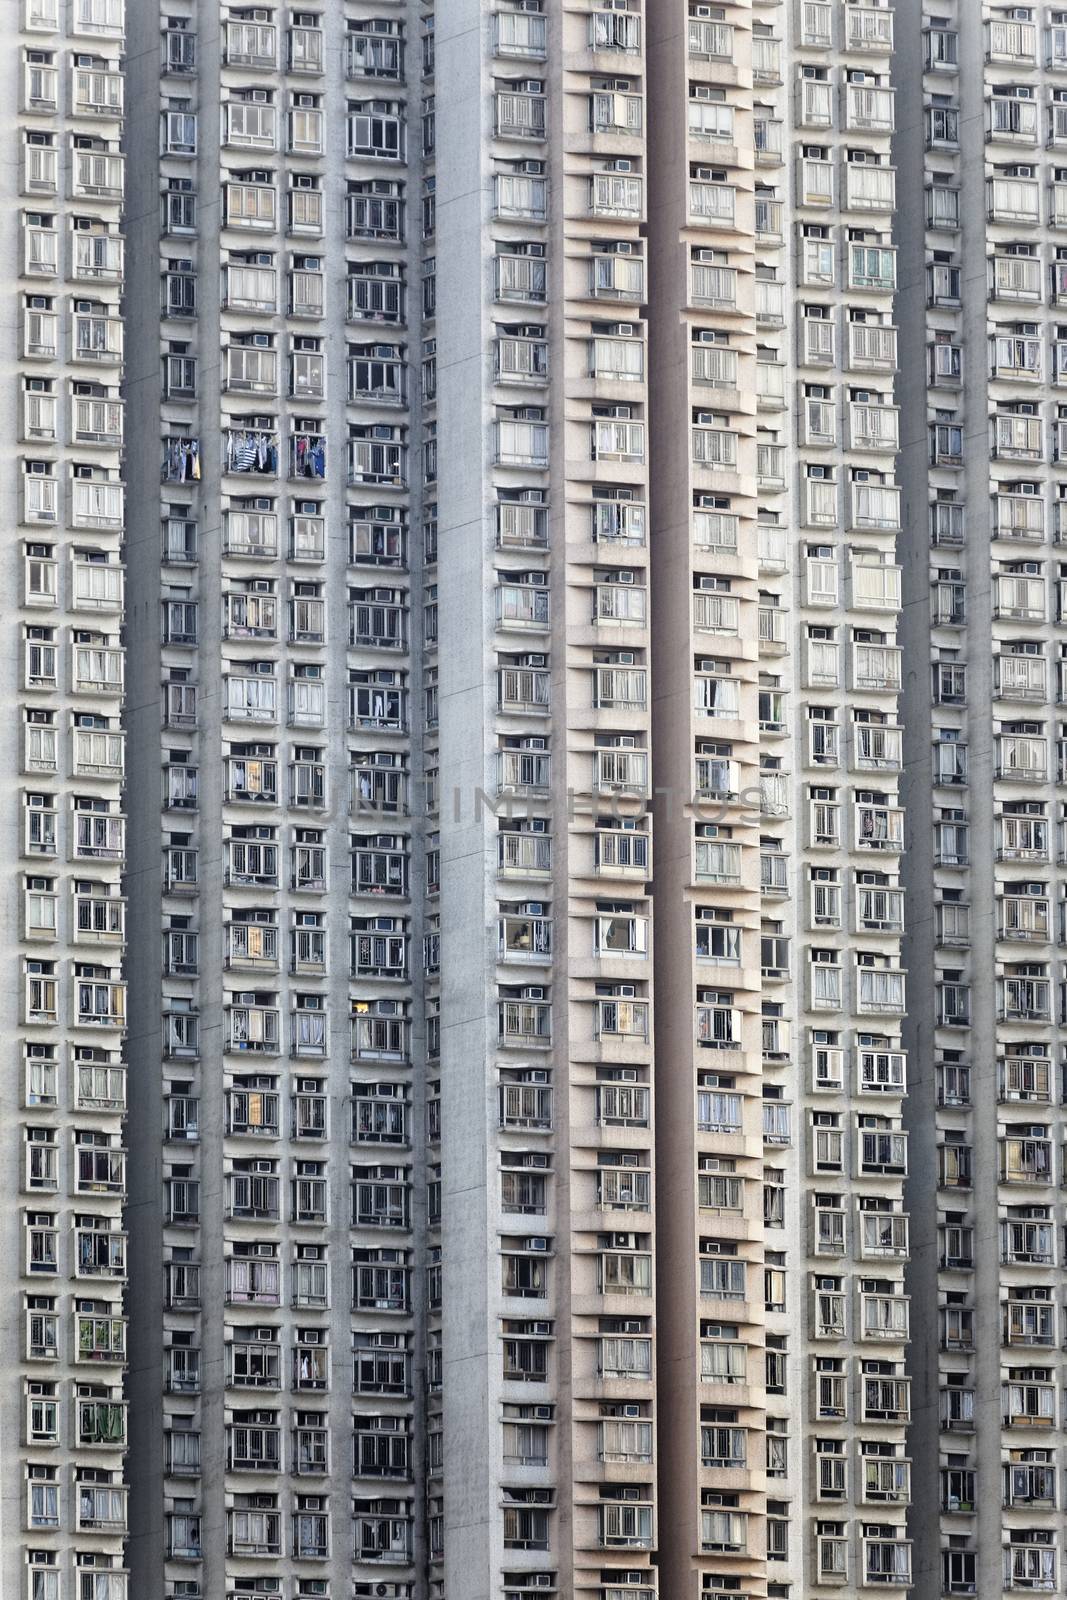 Old apartments in Hong Kong at day